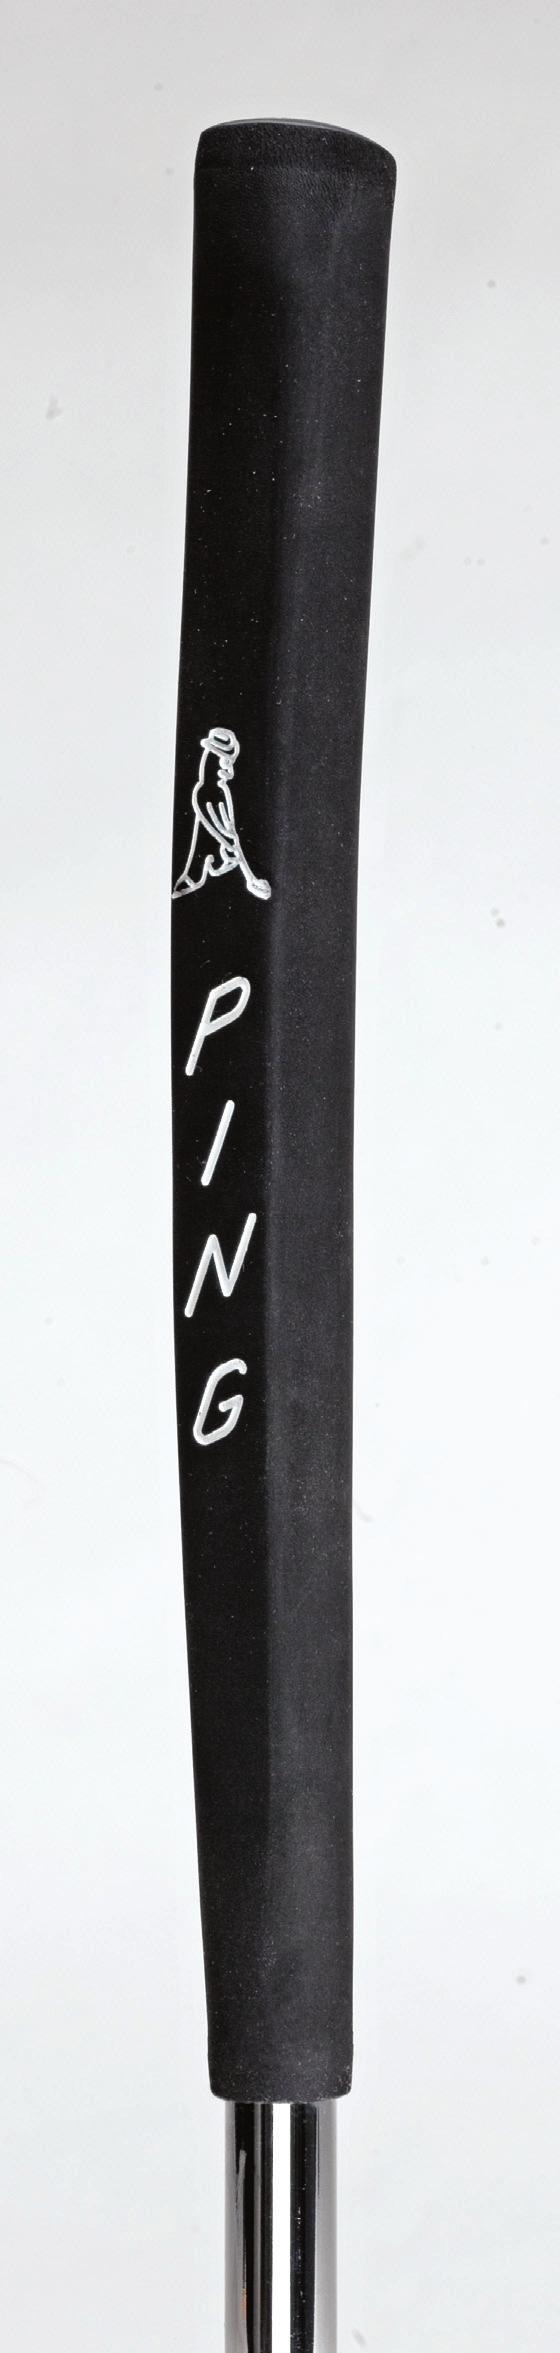 PG305 PING Man lackout Putter Grip 59 (g) PG300 PING Man PP58 Putter Grip 59 (g) C PG790 PING G5i, UG-LE & Craz-E Putter Grip.